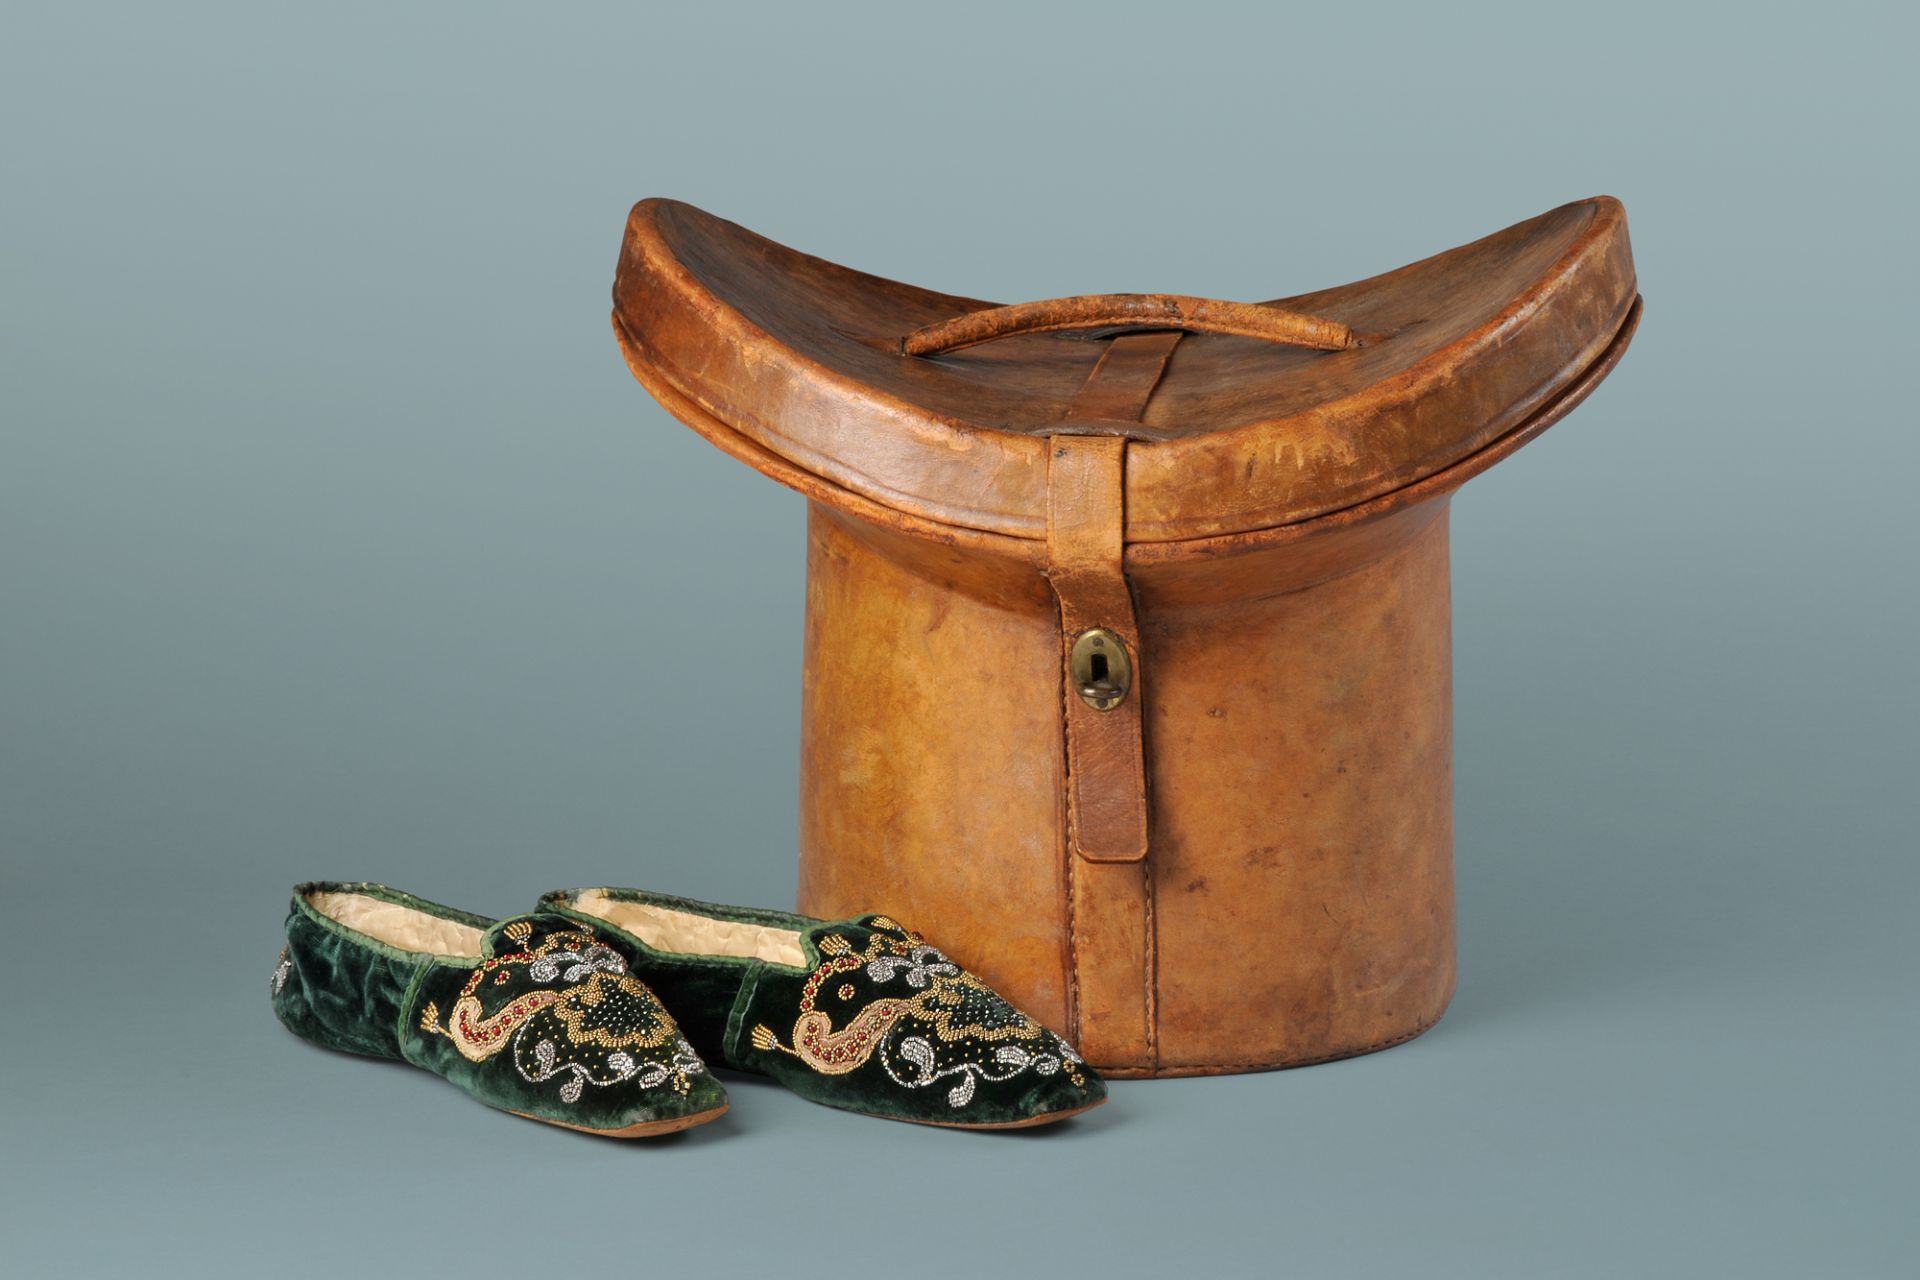 Johann Wolfgang von Goethe’s top hat bandbox, origin unknown, early 19th century and Ulrike von Levetzow’s slippers, origin unknown, approx. 1825